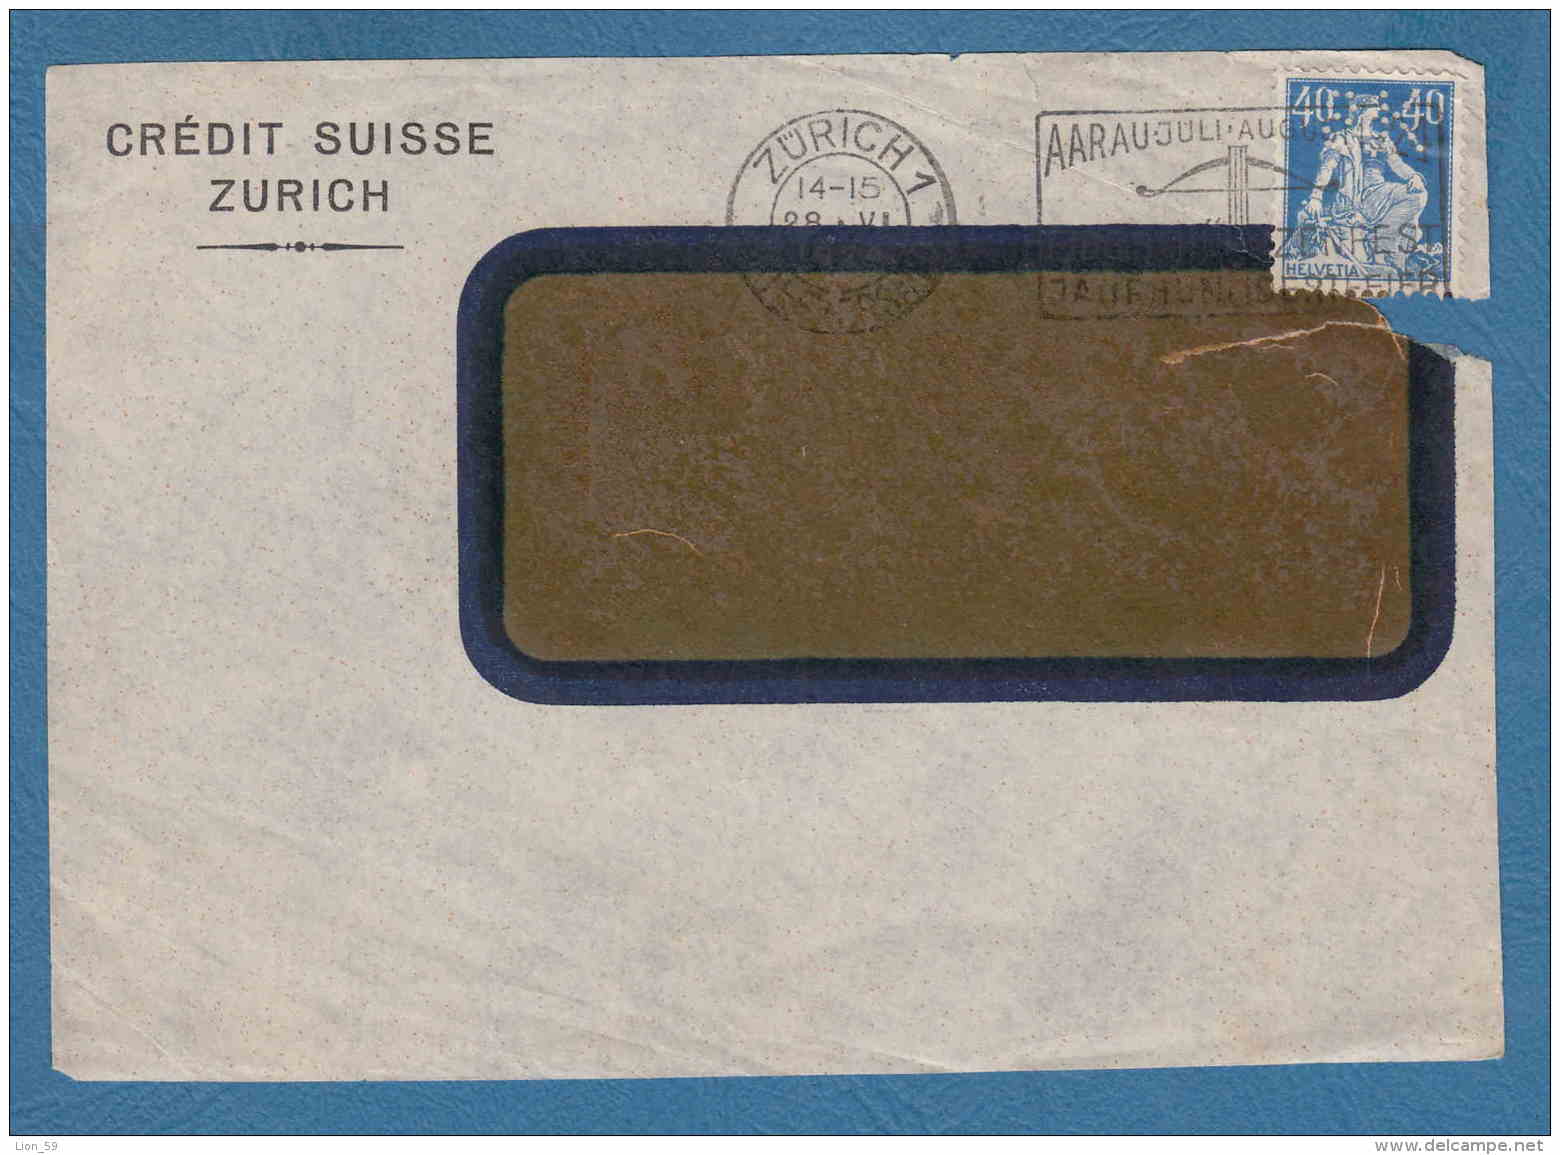 213363 / 1924 - 40 C. - CREDIT SUISSE ZURICH - Perfin Perfores Perforiert Gezähnt Perforati Switzerland Suisse Schweiz - Perfins